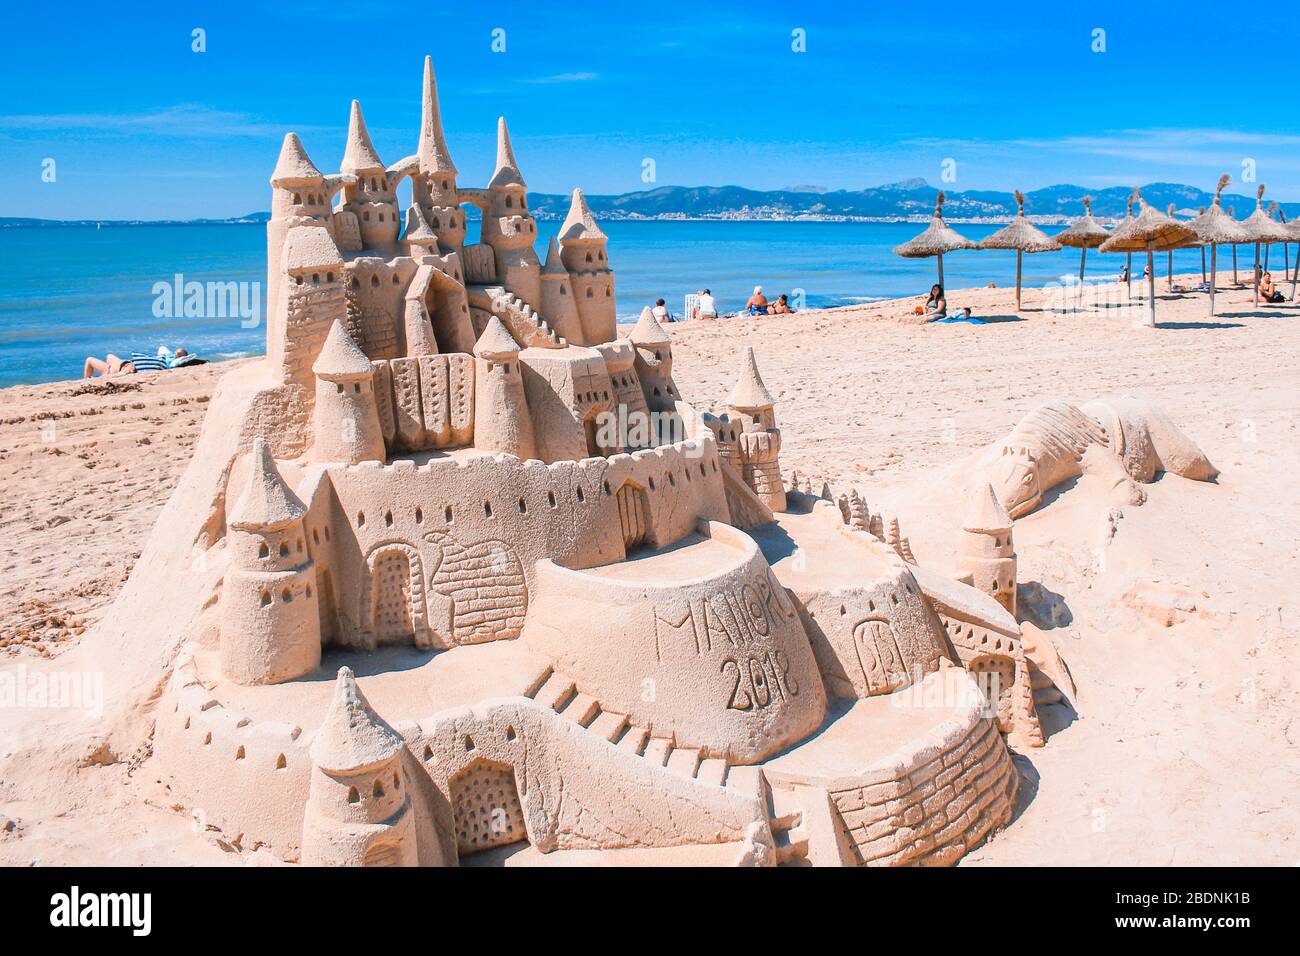 El Arenal, Maiorca, Spagna - Marzo 27 2018: Bellissimo castello di sabbia sulla spiaggia di El Arenal. E' un famoso luogo turistico durante l'estate a Maiorca. Foto Stock